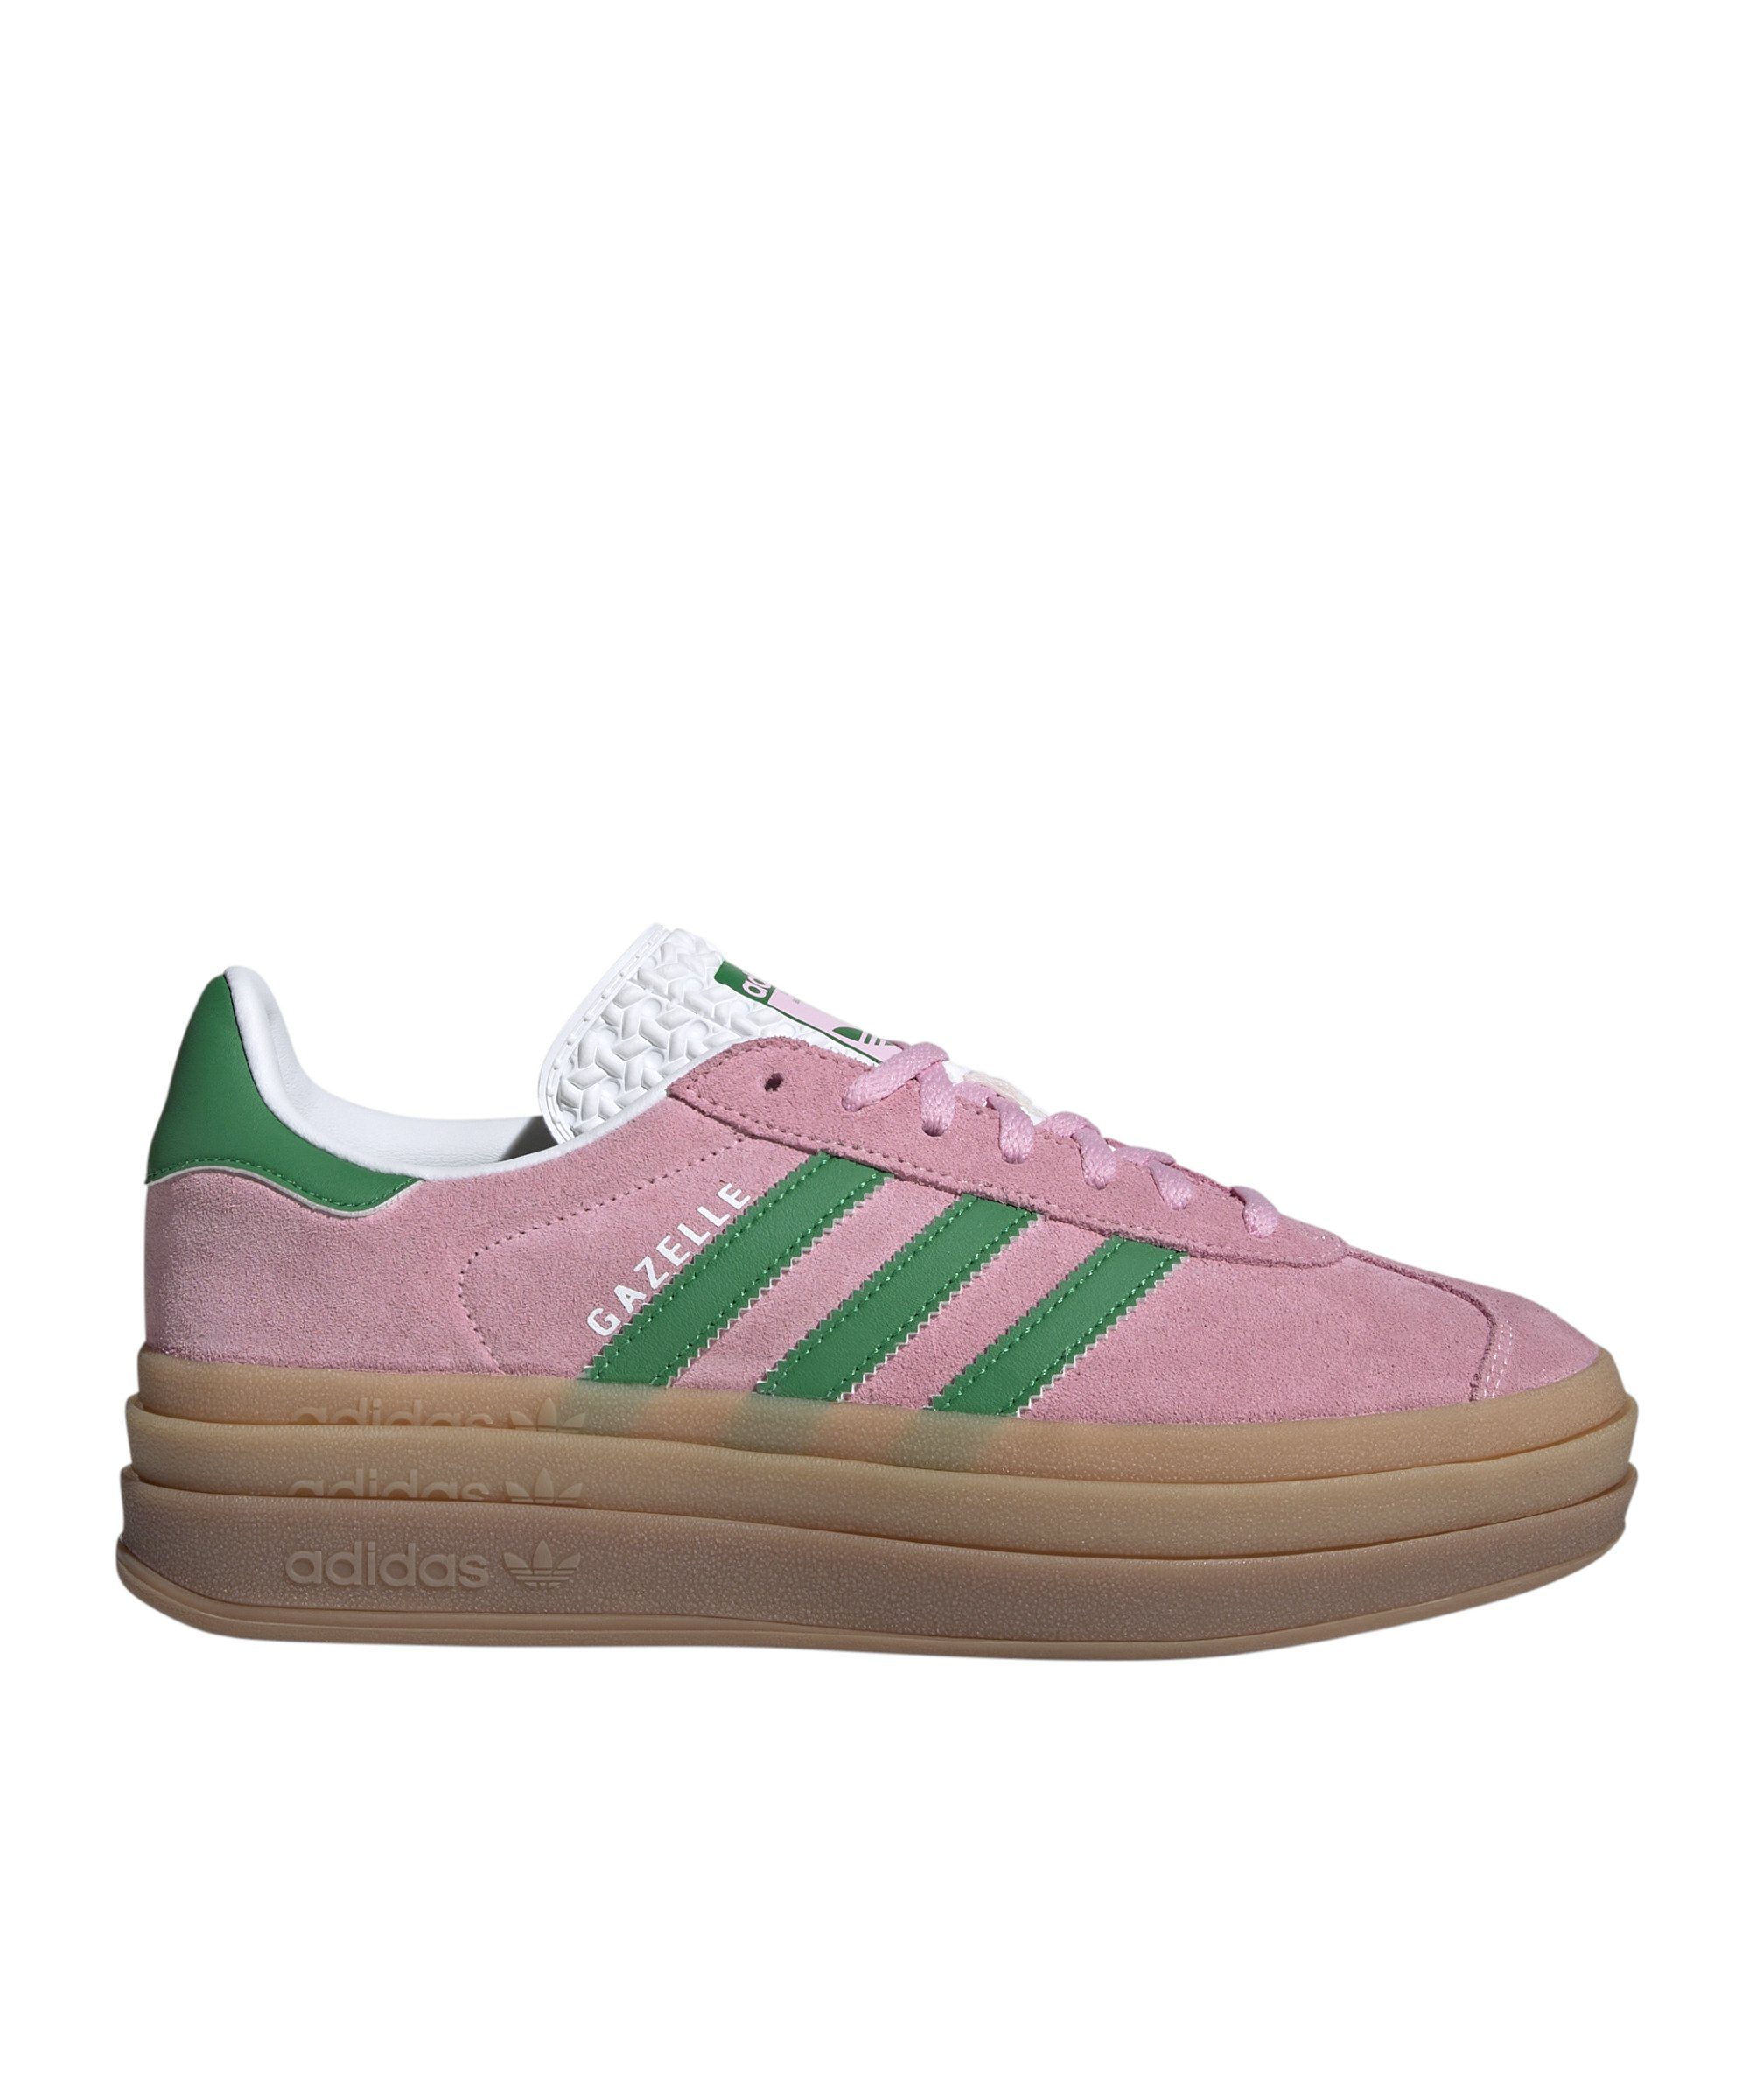 adidas Originals Gazelle Bold Damen Sneaker pinkgruenweiss